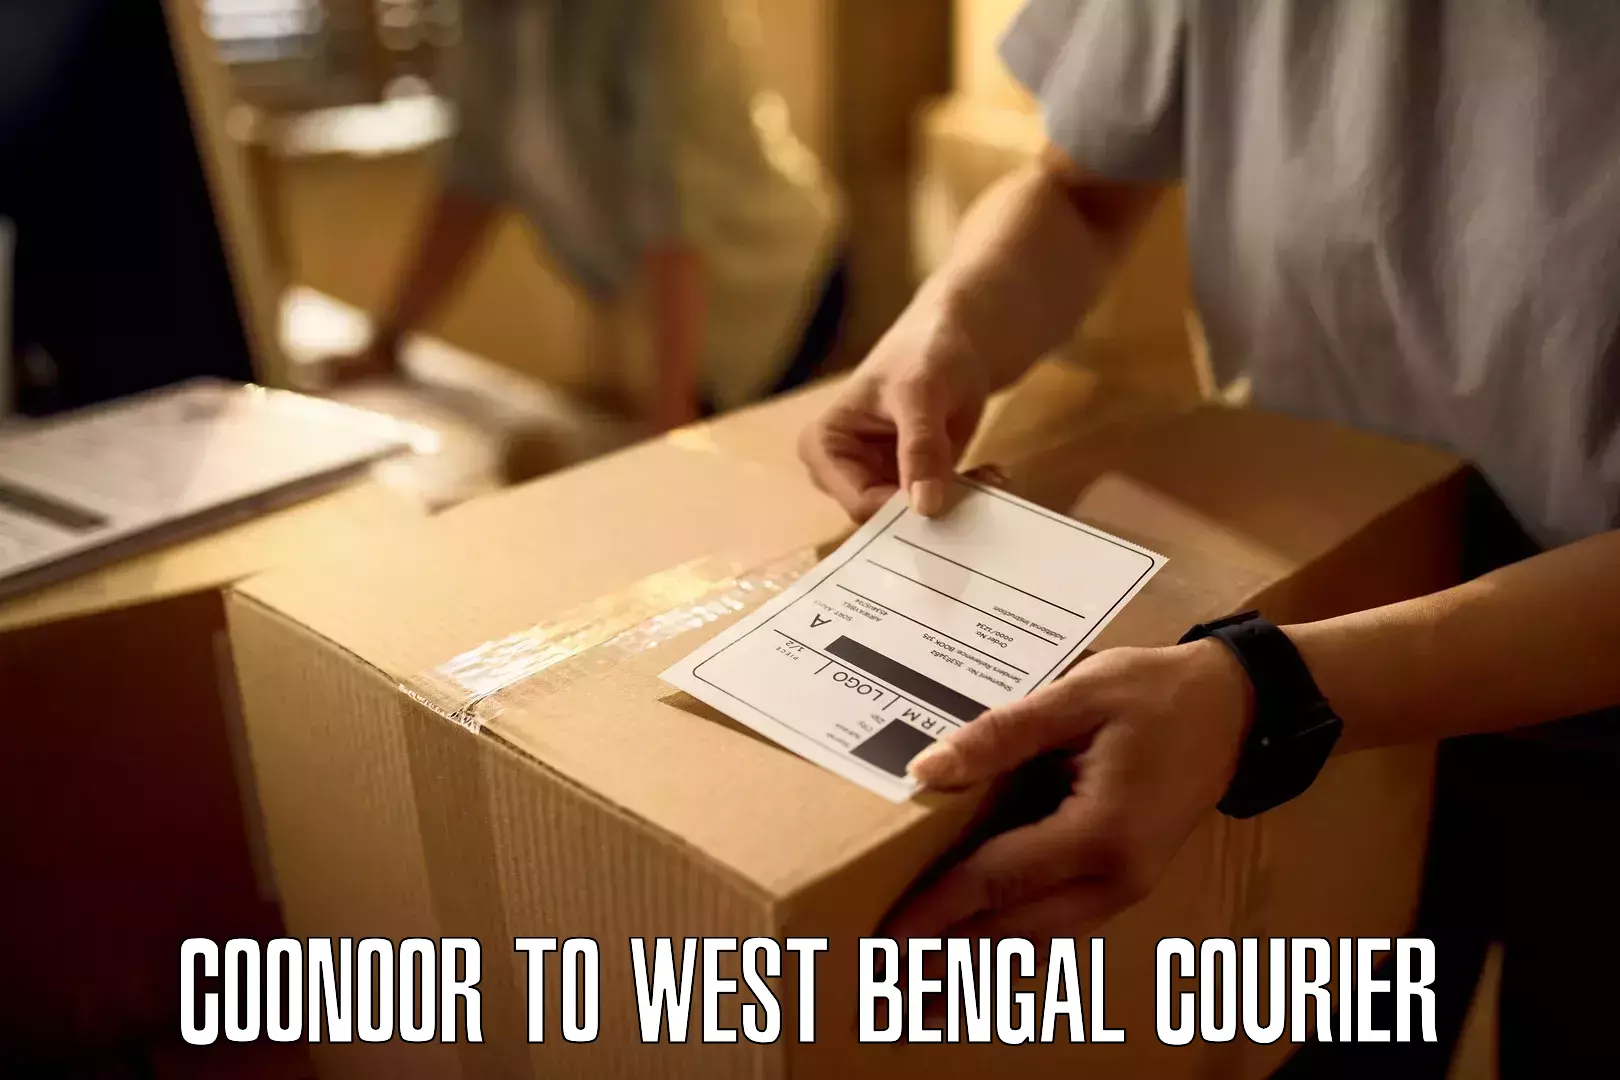 Bulk courier orders in Coonoor to Raghunathganj